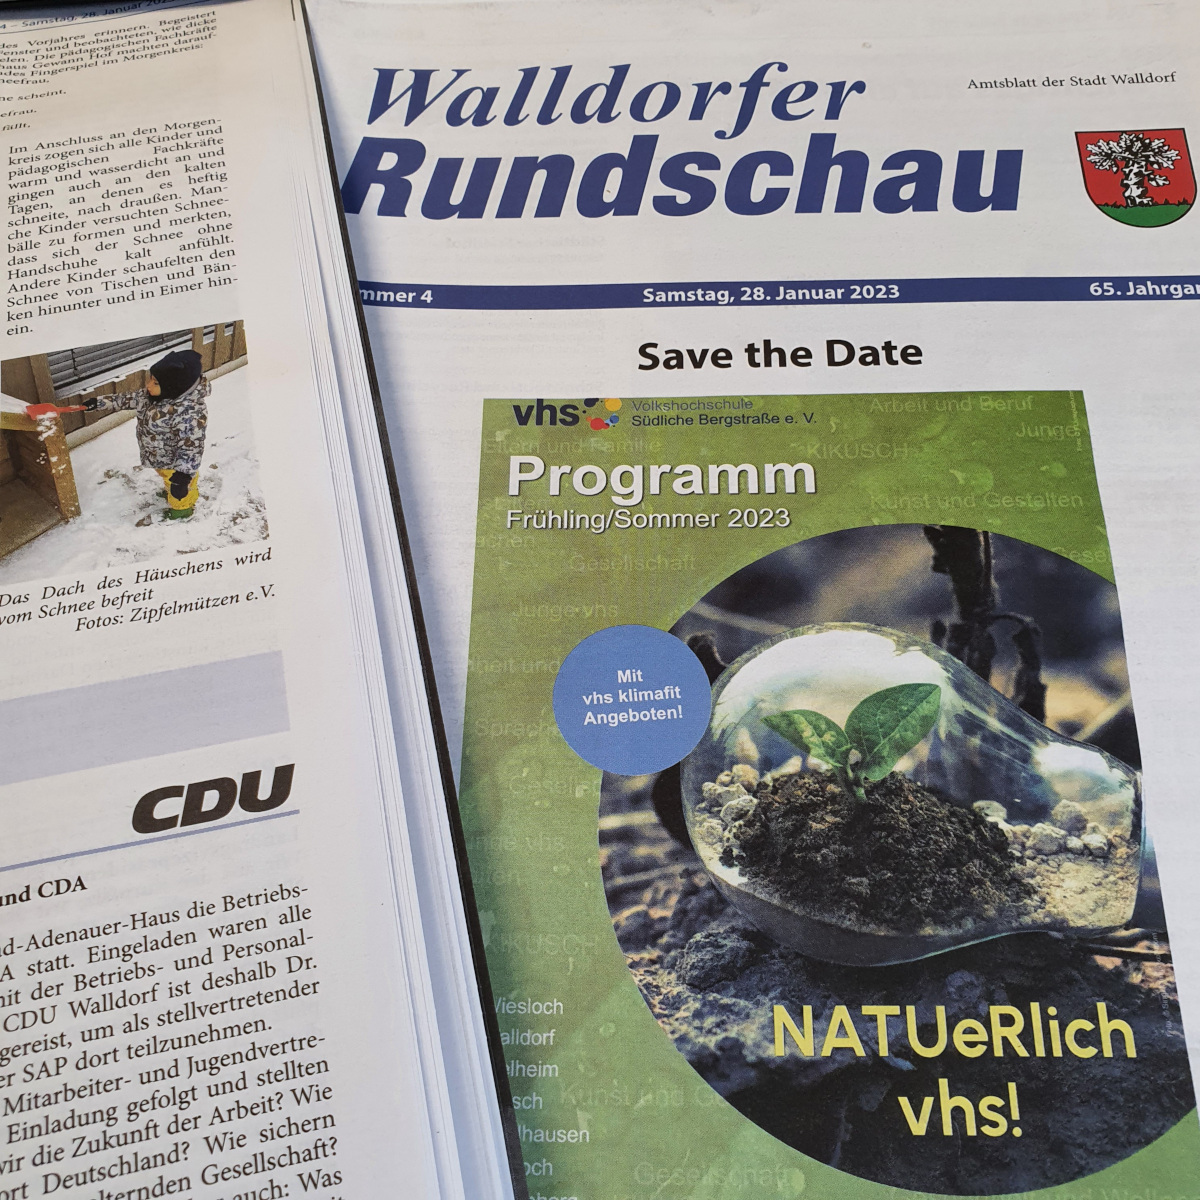 Die Walldorfer Rundschau 2023 Nr. 4 | Foto: Dr. Clemens Kriesel